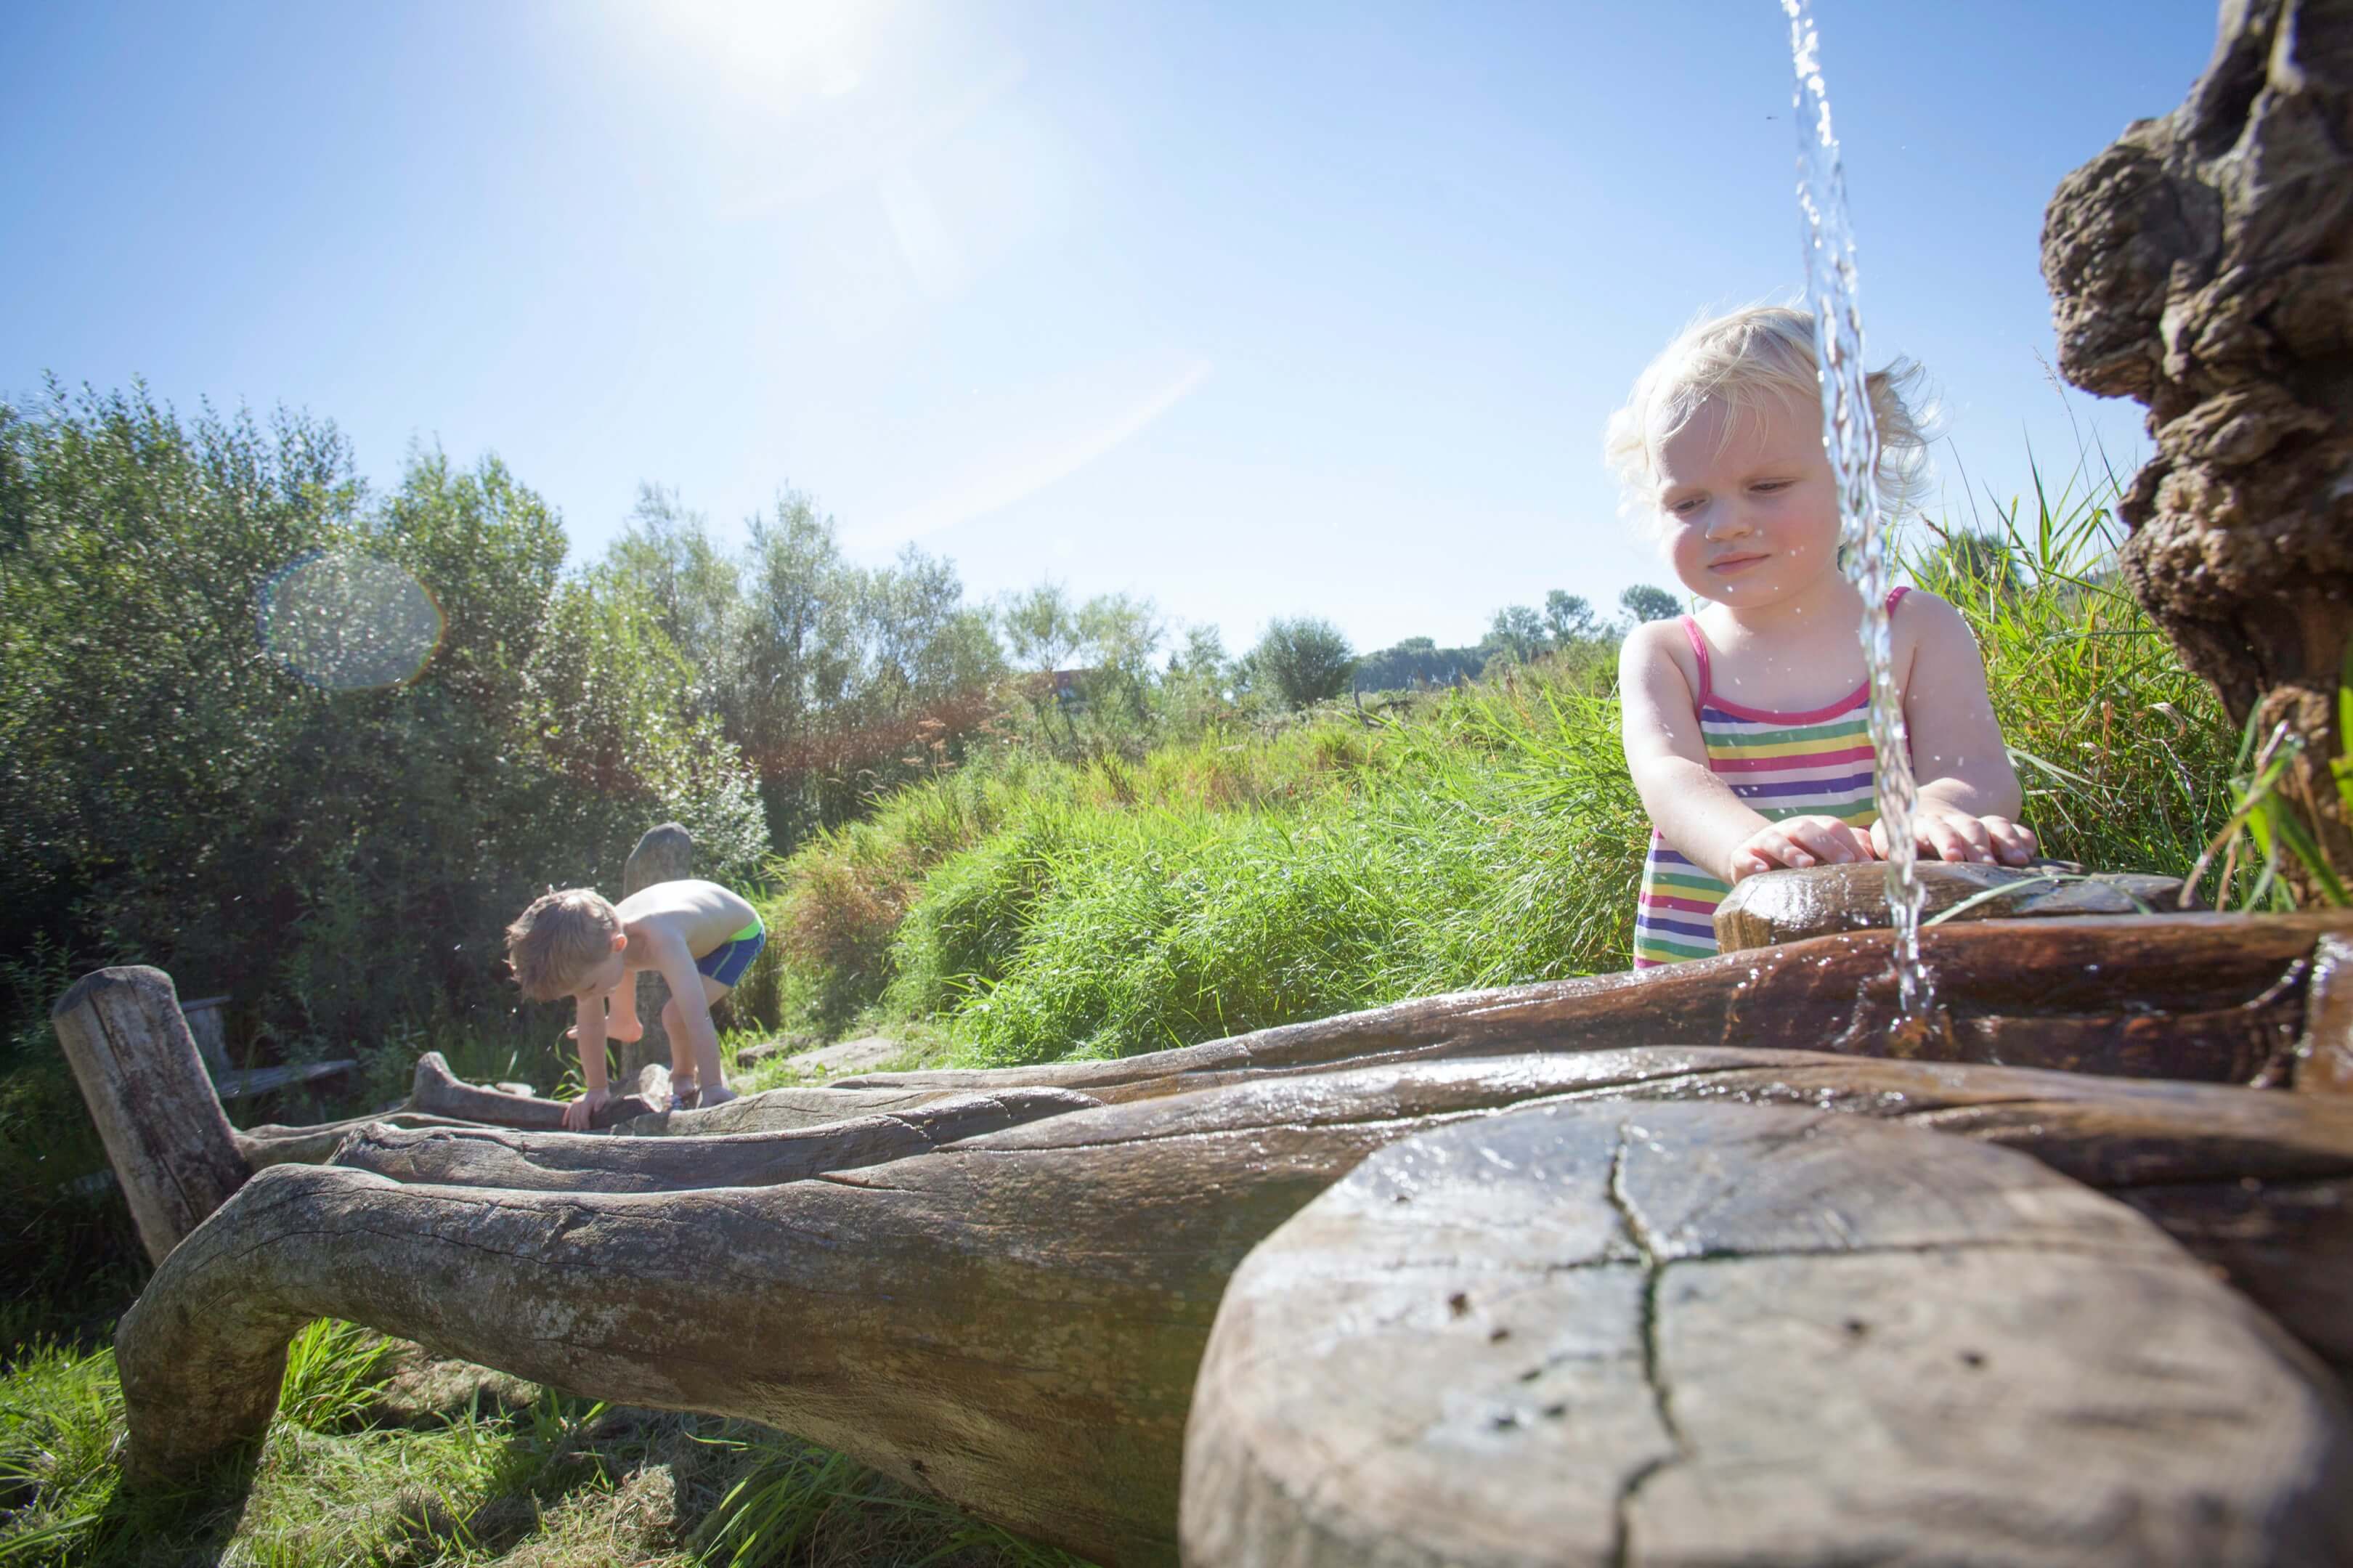 Saartje kind speelboerderij verwondering 2,5 jaar zomer water schommelen Jur Jurjen Poeles Fotografie reportage vrij werk vrijwerk